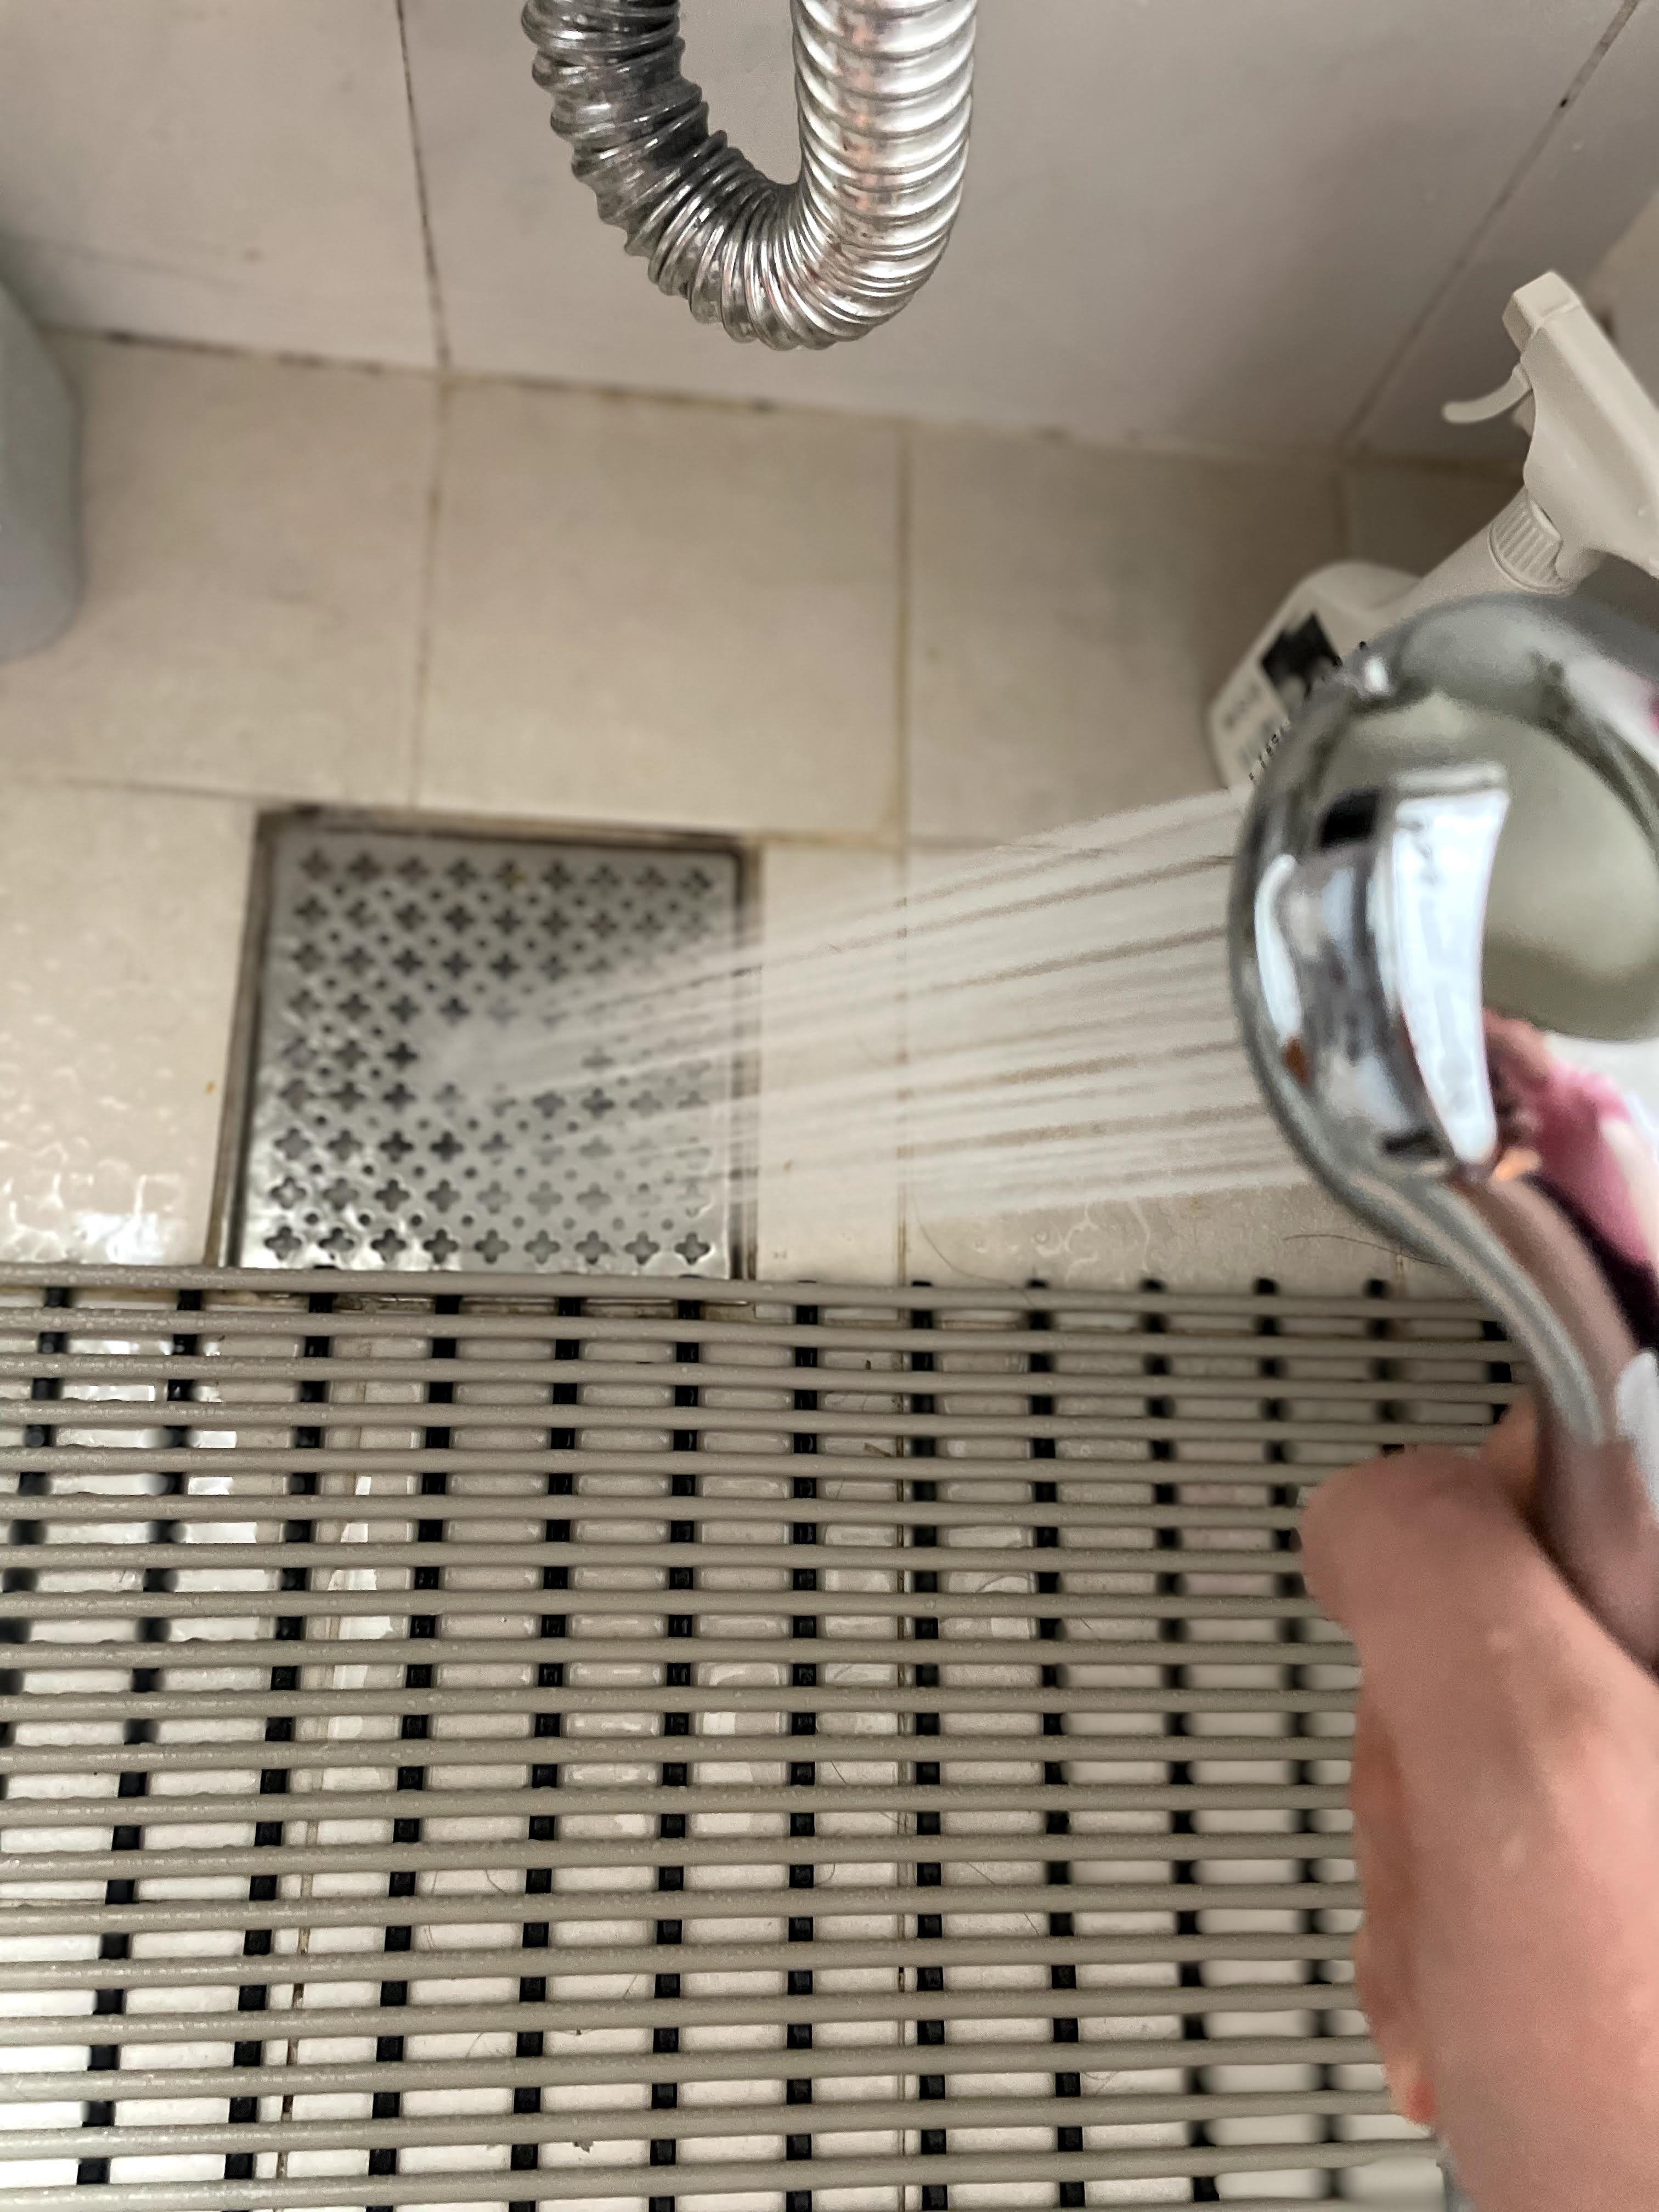 샤워기로 뜨거운 물을 뿌려 욕실 배수구를 소독하는 사진